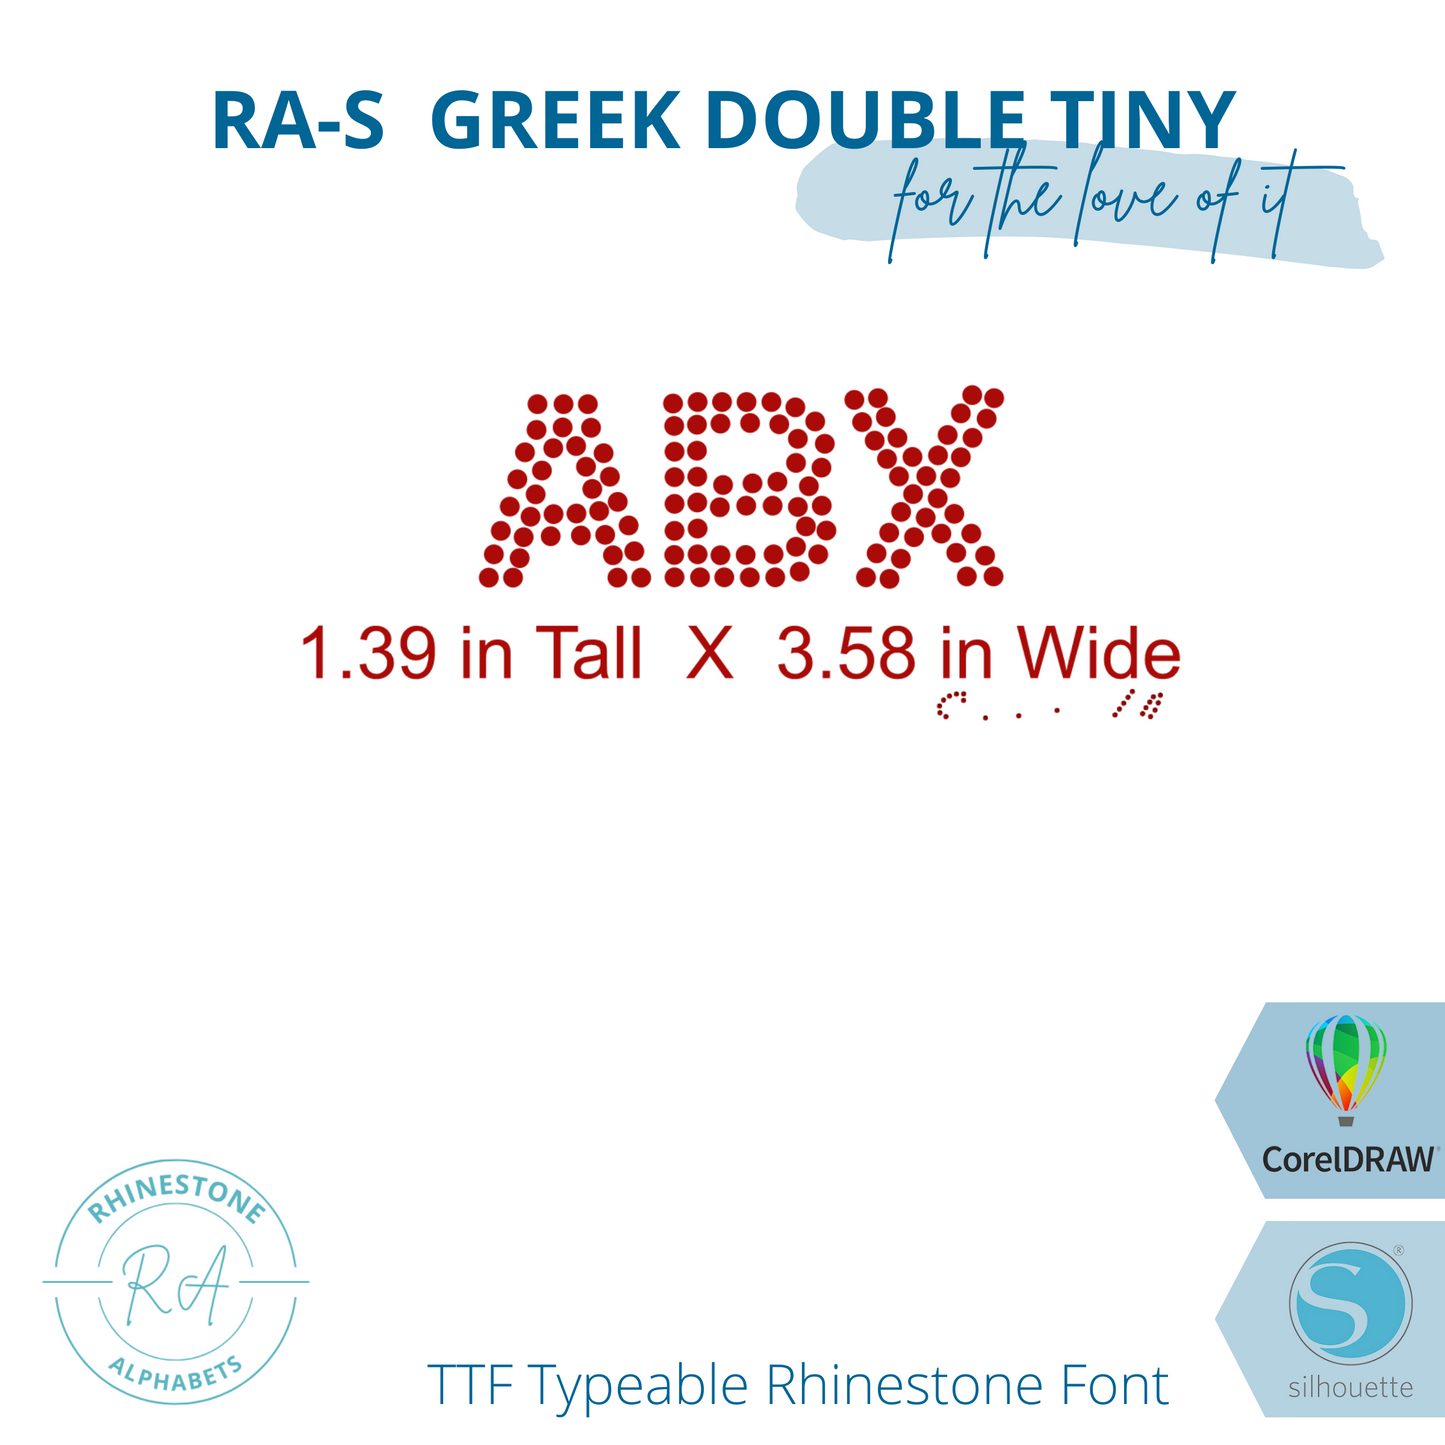 RA-S Greek Double Tiny - RhinestoneAlphabets